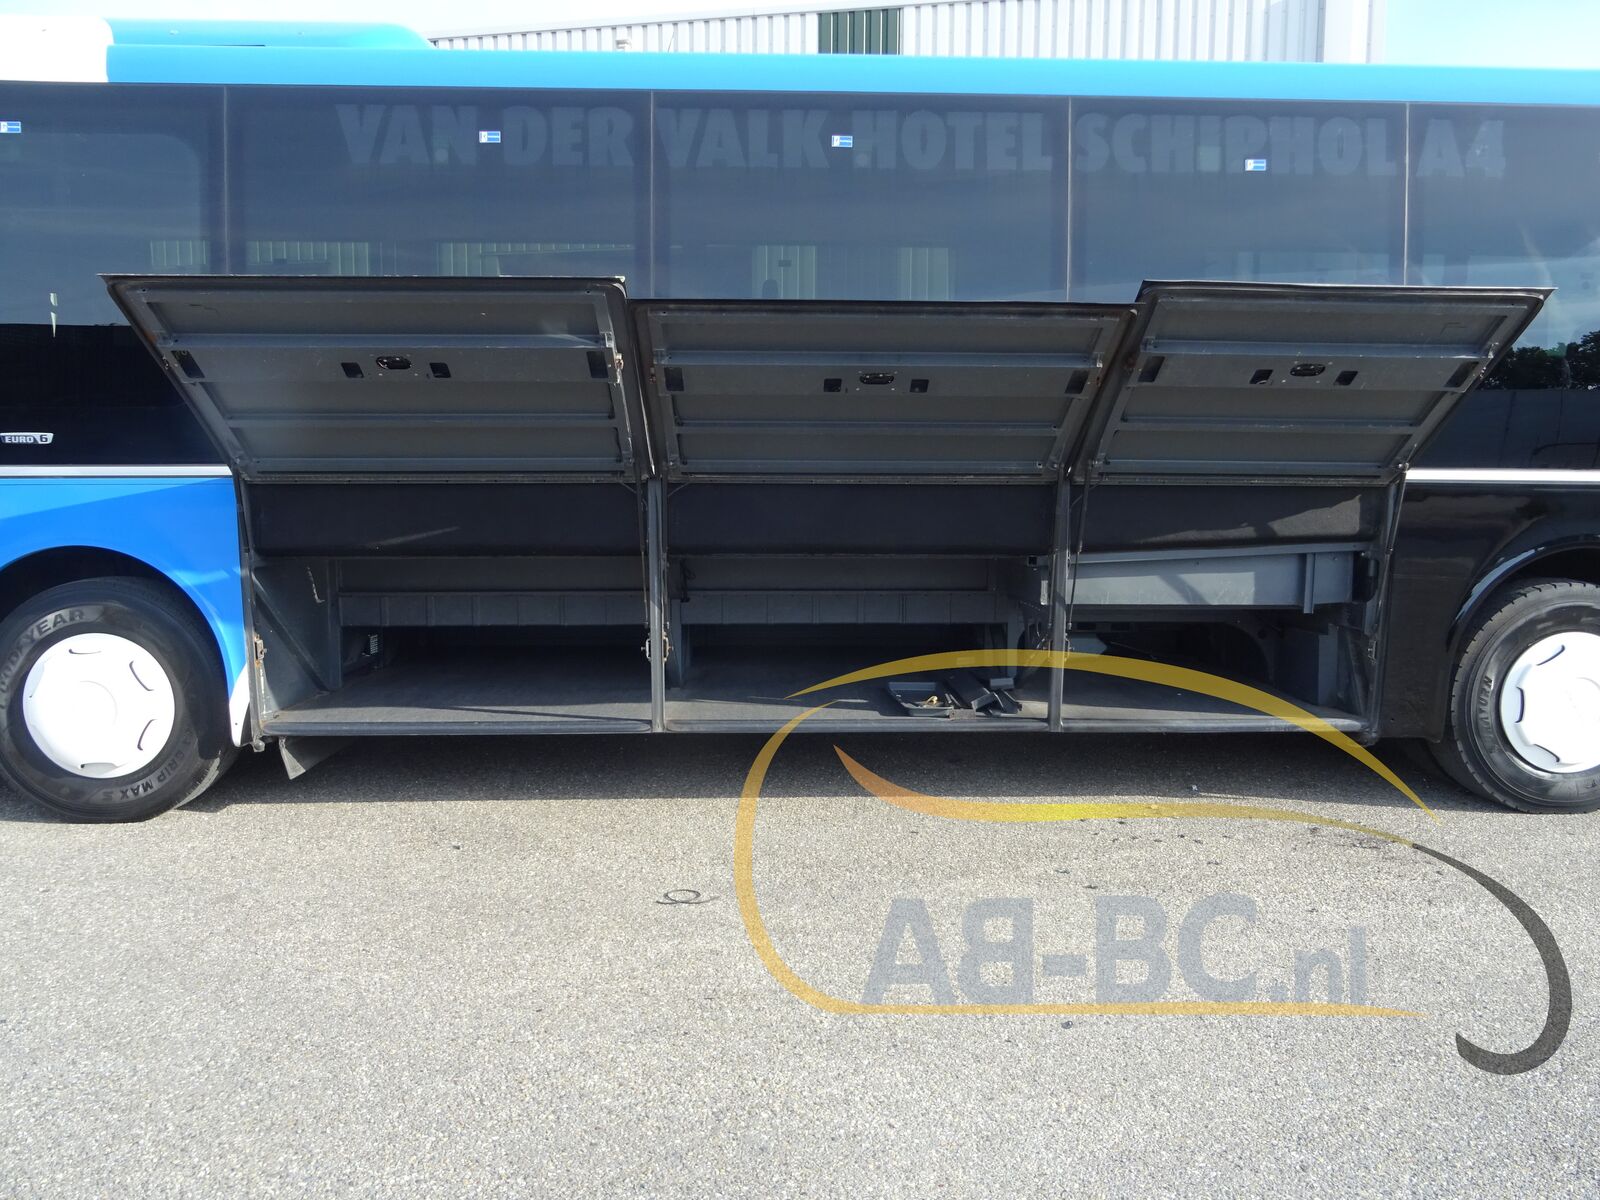 interurban-bus-MAN-Lions-Regio-Coach-52-Seats-EURO-6---1657089816054622824_orig_67022a092e43f8af76889e9fd0a15c8e--22061016384526166100